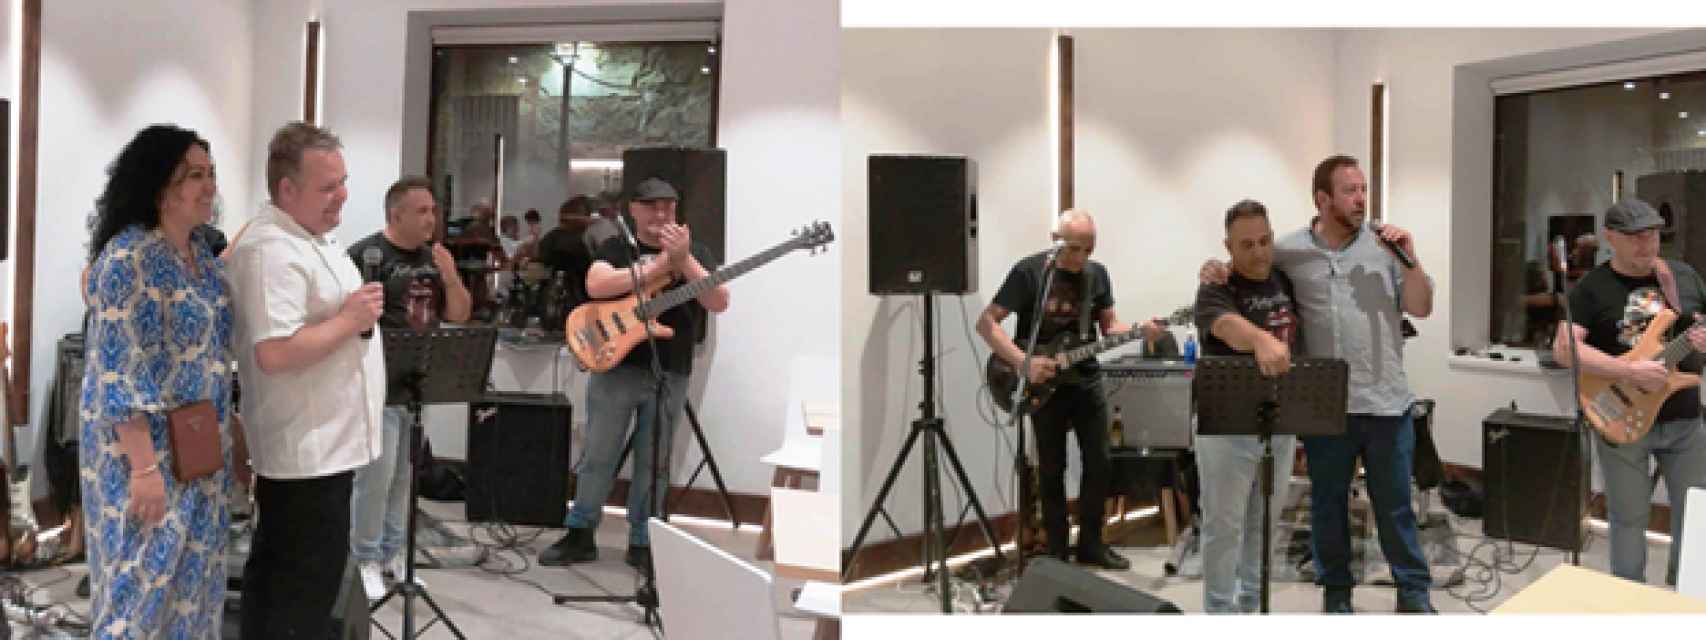 Pachi, Koke y Roberto en el acto de presentación con la banda “Pinto pop rock band” que amenizaron la noche inaugural